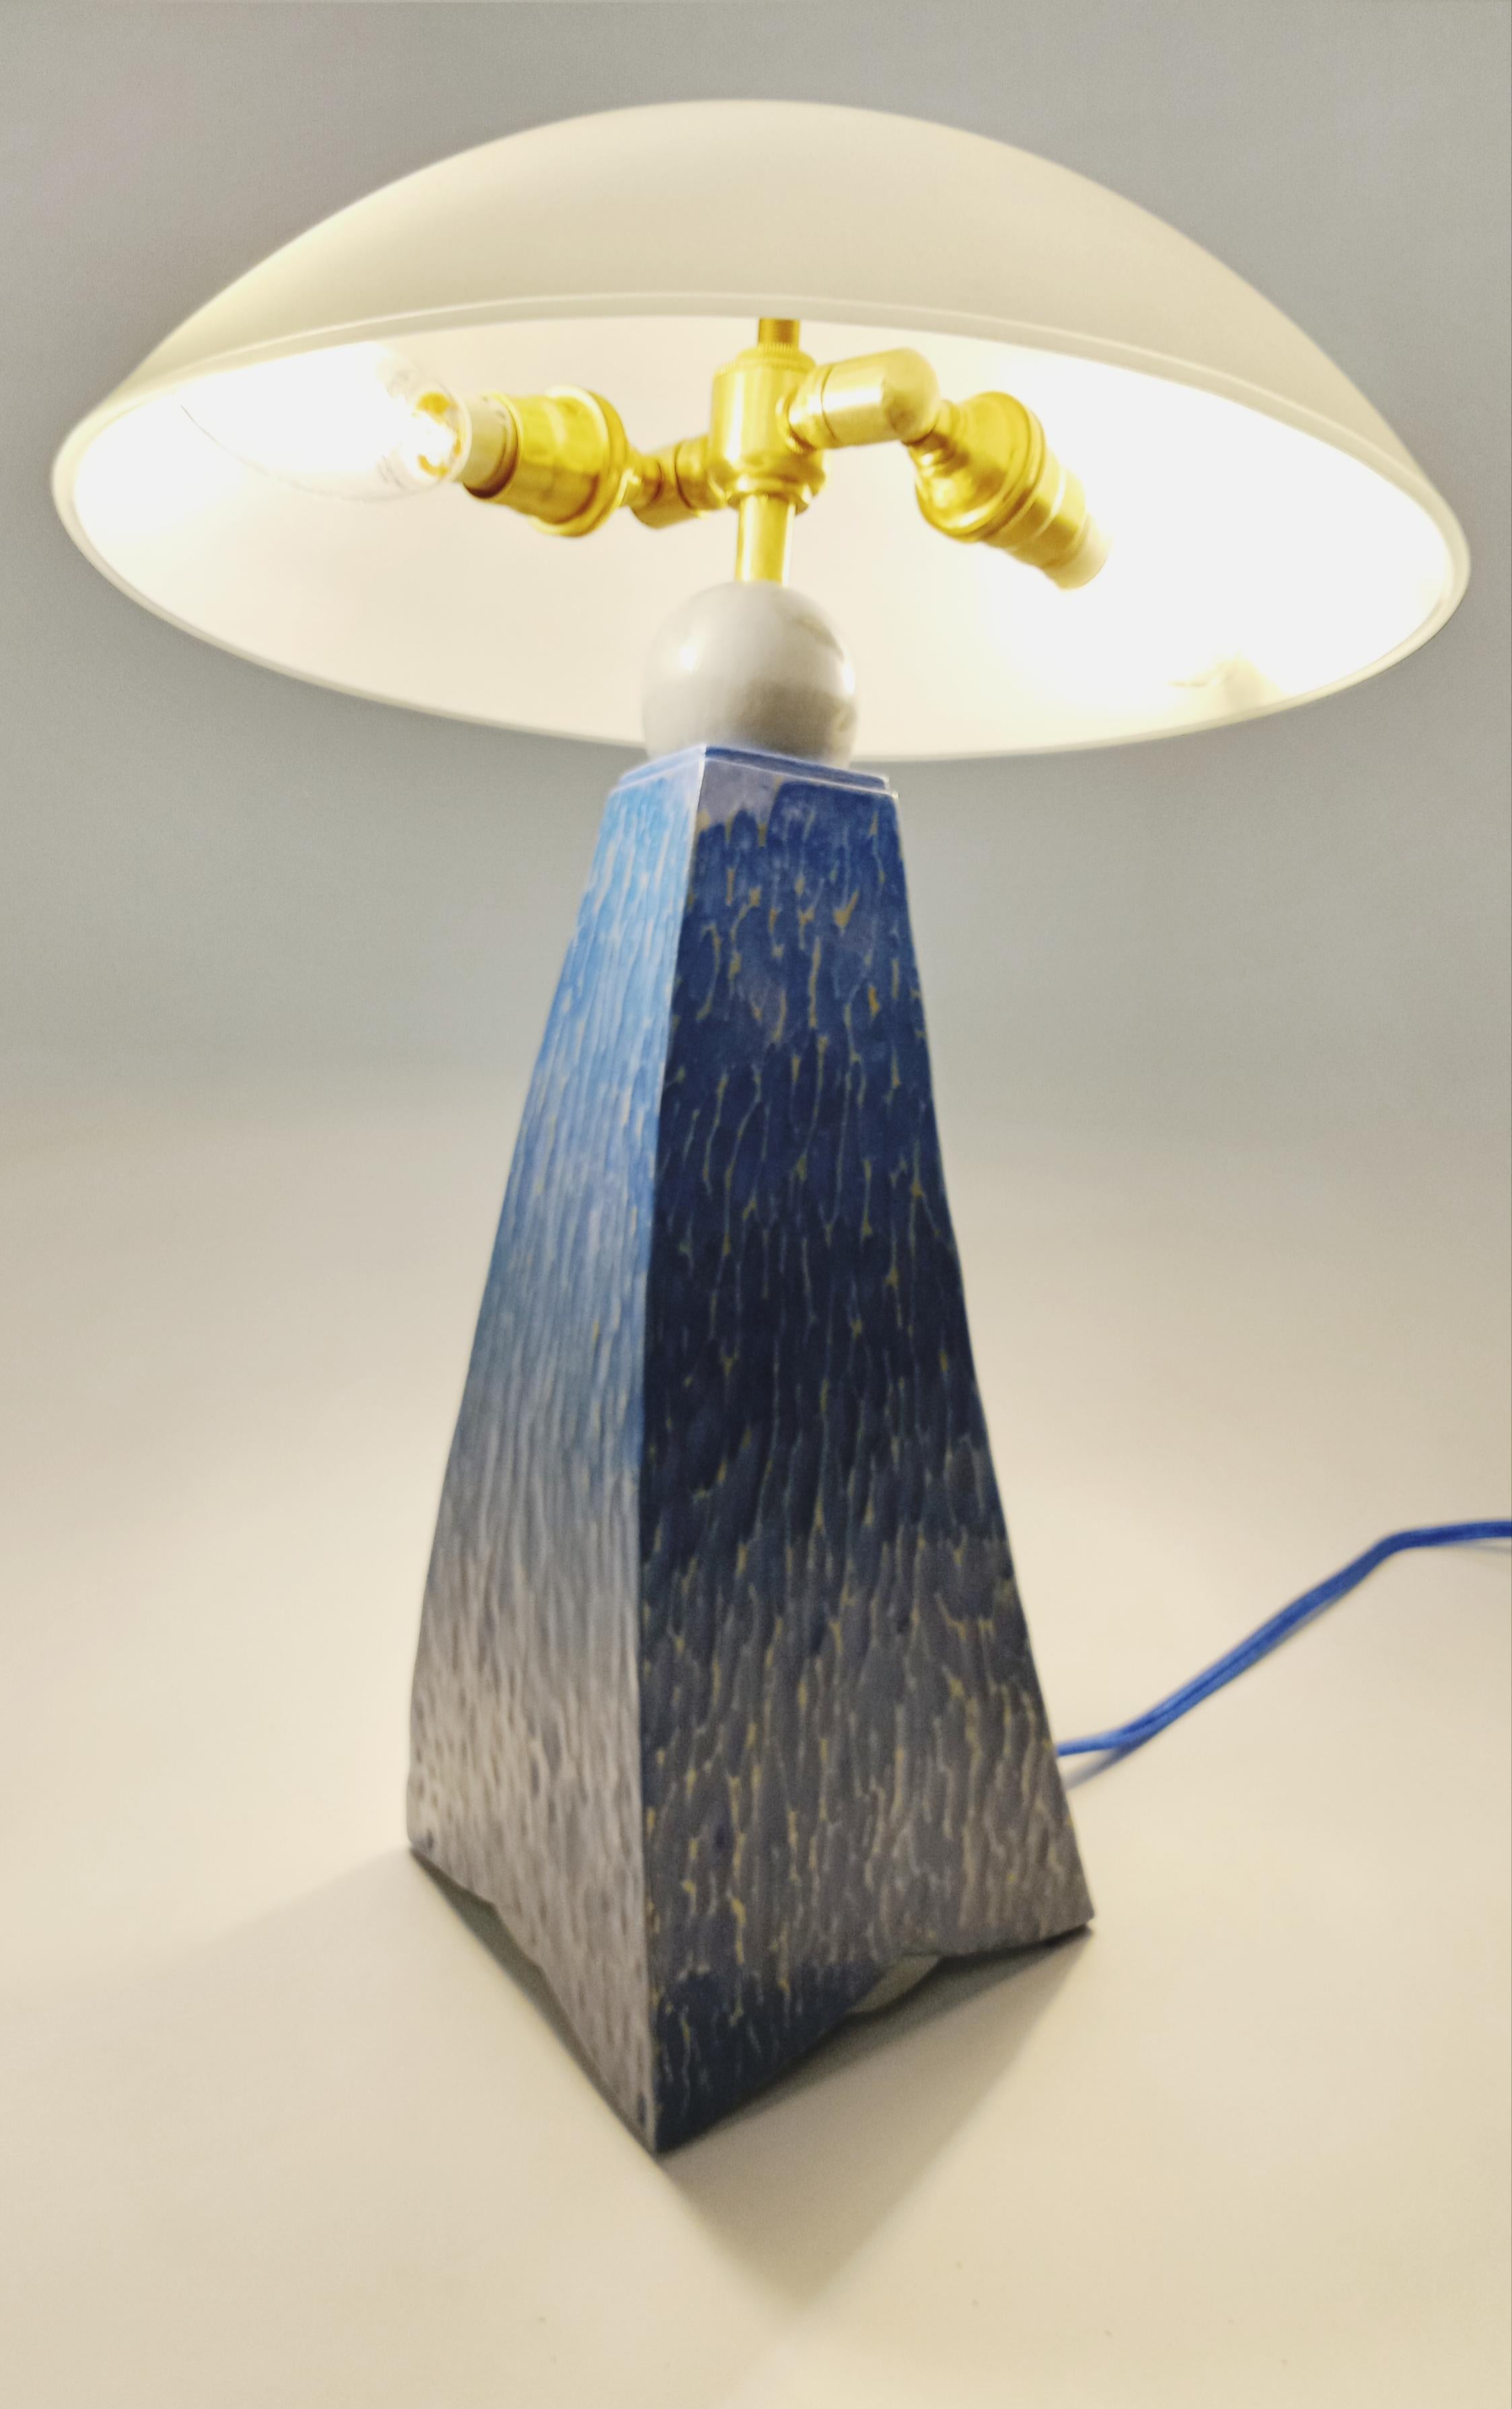 Beleuchten Sie Ihren Raum mit dem gefühlvollen Rhythmus der Jazz Inspired Lamp II Mini texturierten und milchlackierten Variante. verkörpert in unserer fesselnden Kreation - der Jazz Inspired Lamp II. Dieses maßgefertigte Stück ist eine harmonische